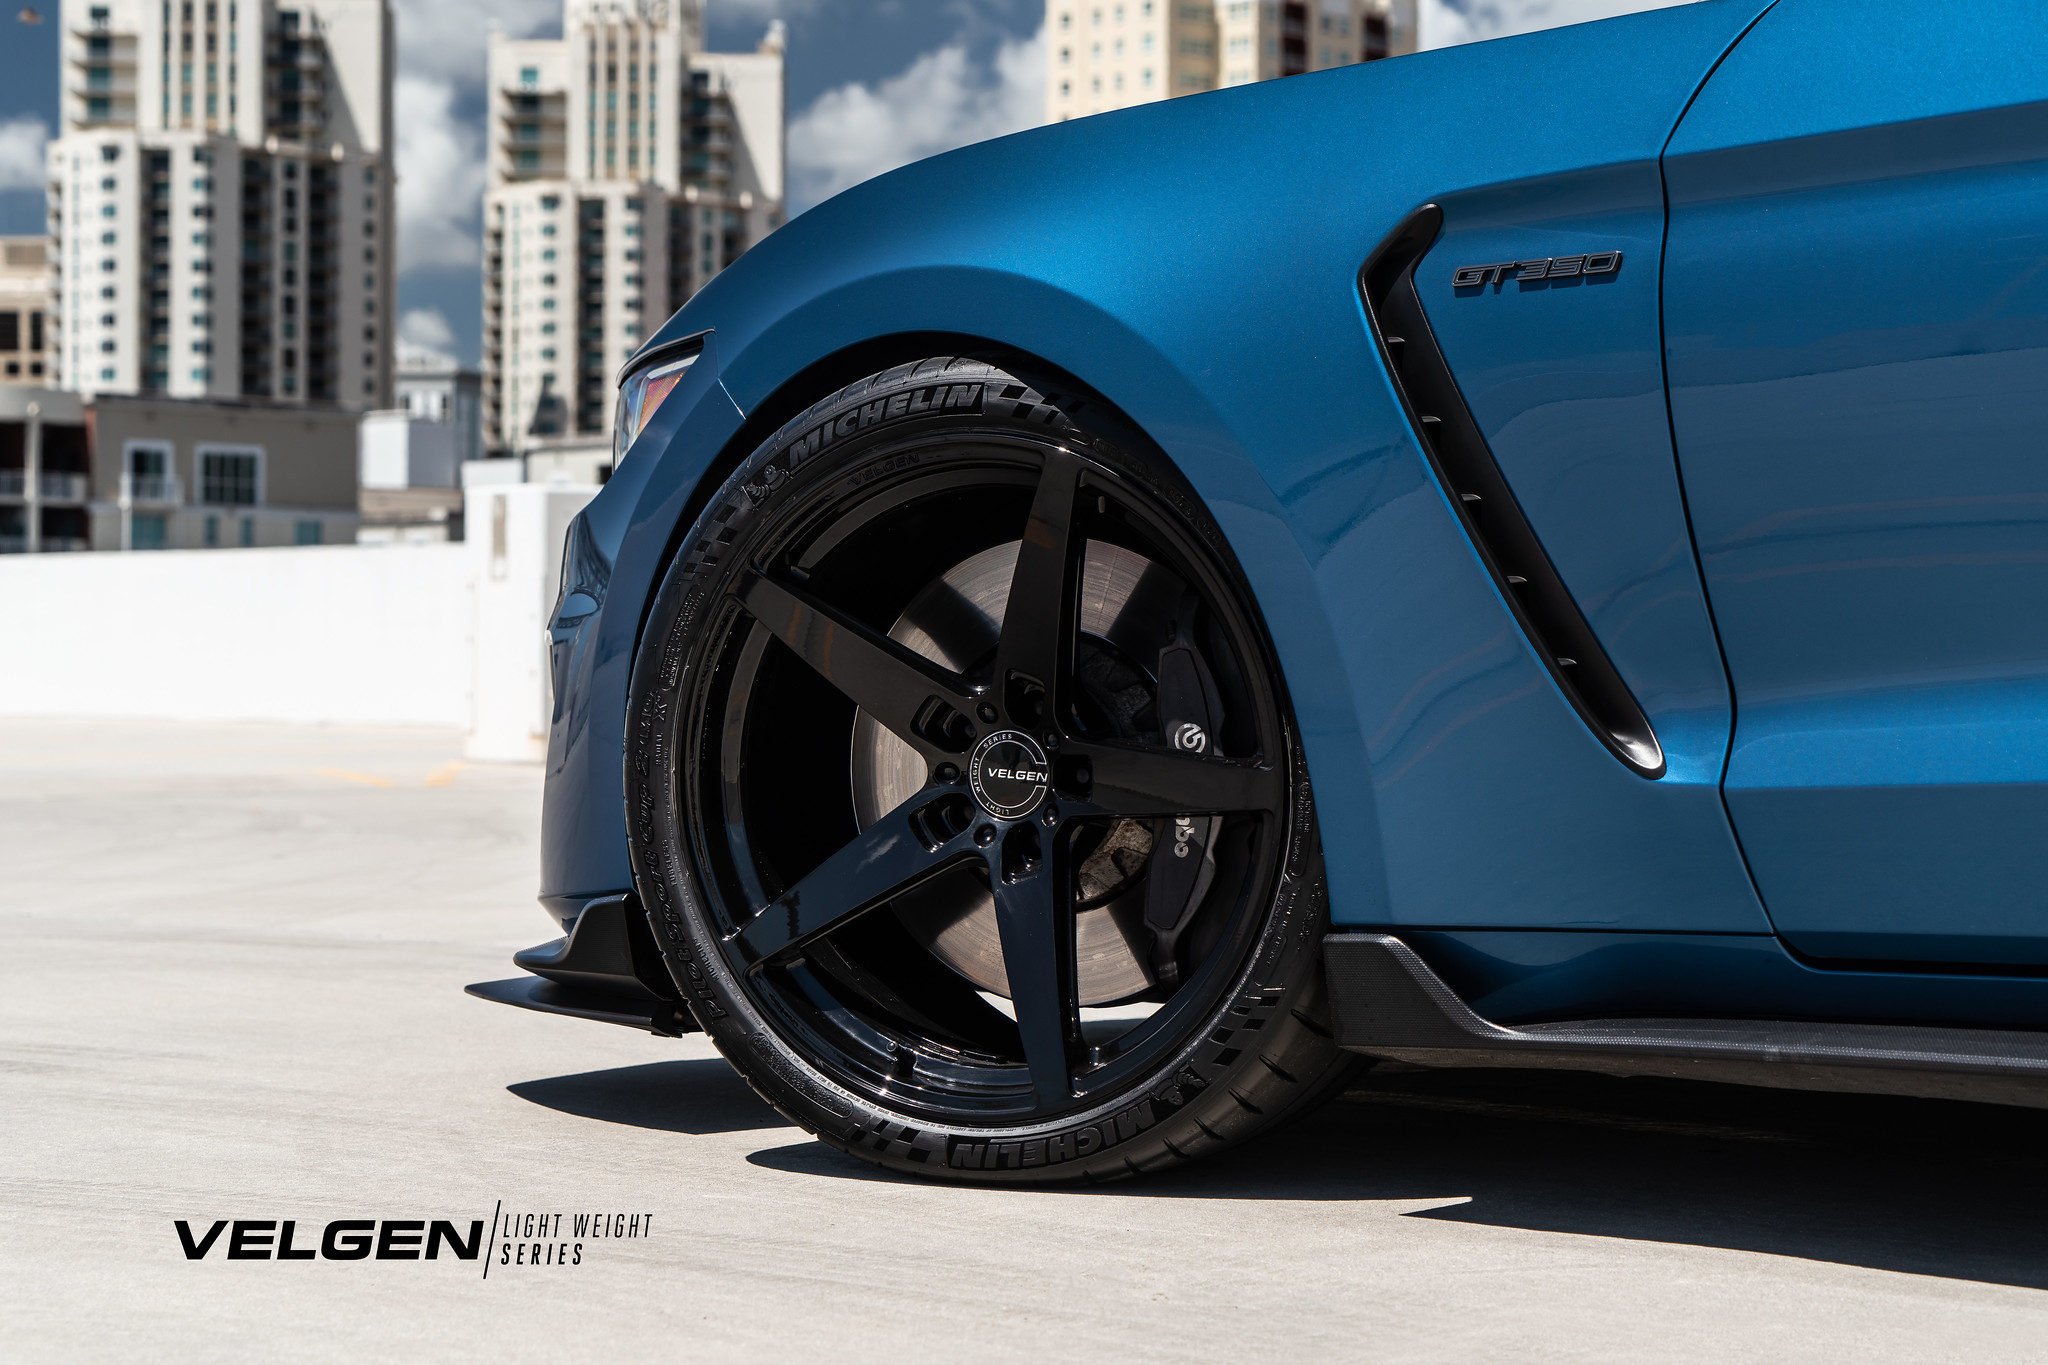 S650 Mustang Velgen wheels for your S650 Mustang | Vibe Motorsports 52216641056_c986d8df01_k